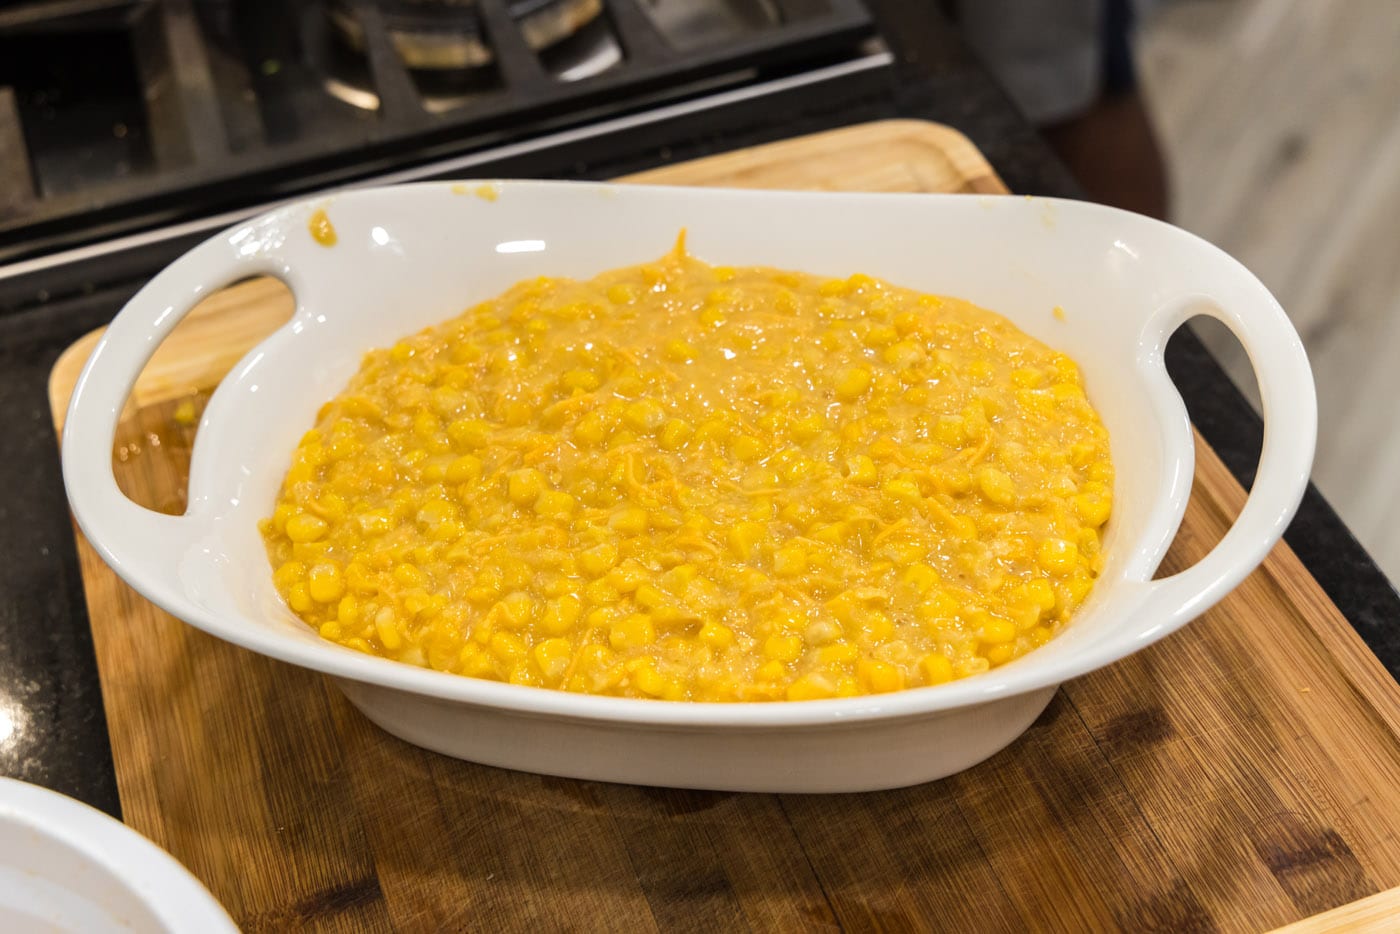 scalloped corn in a baking dish